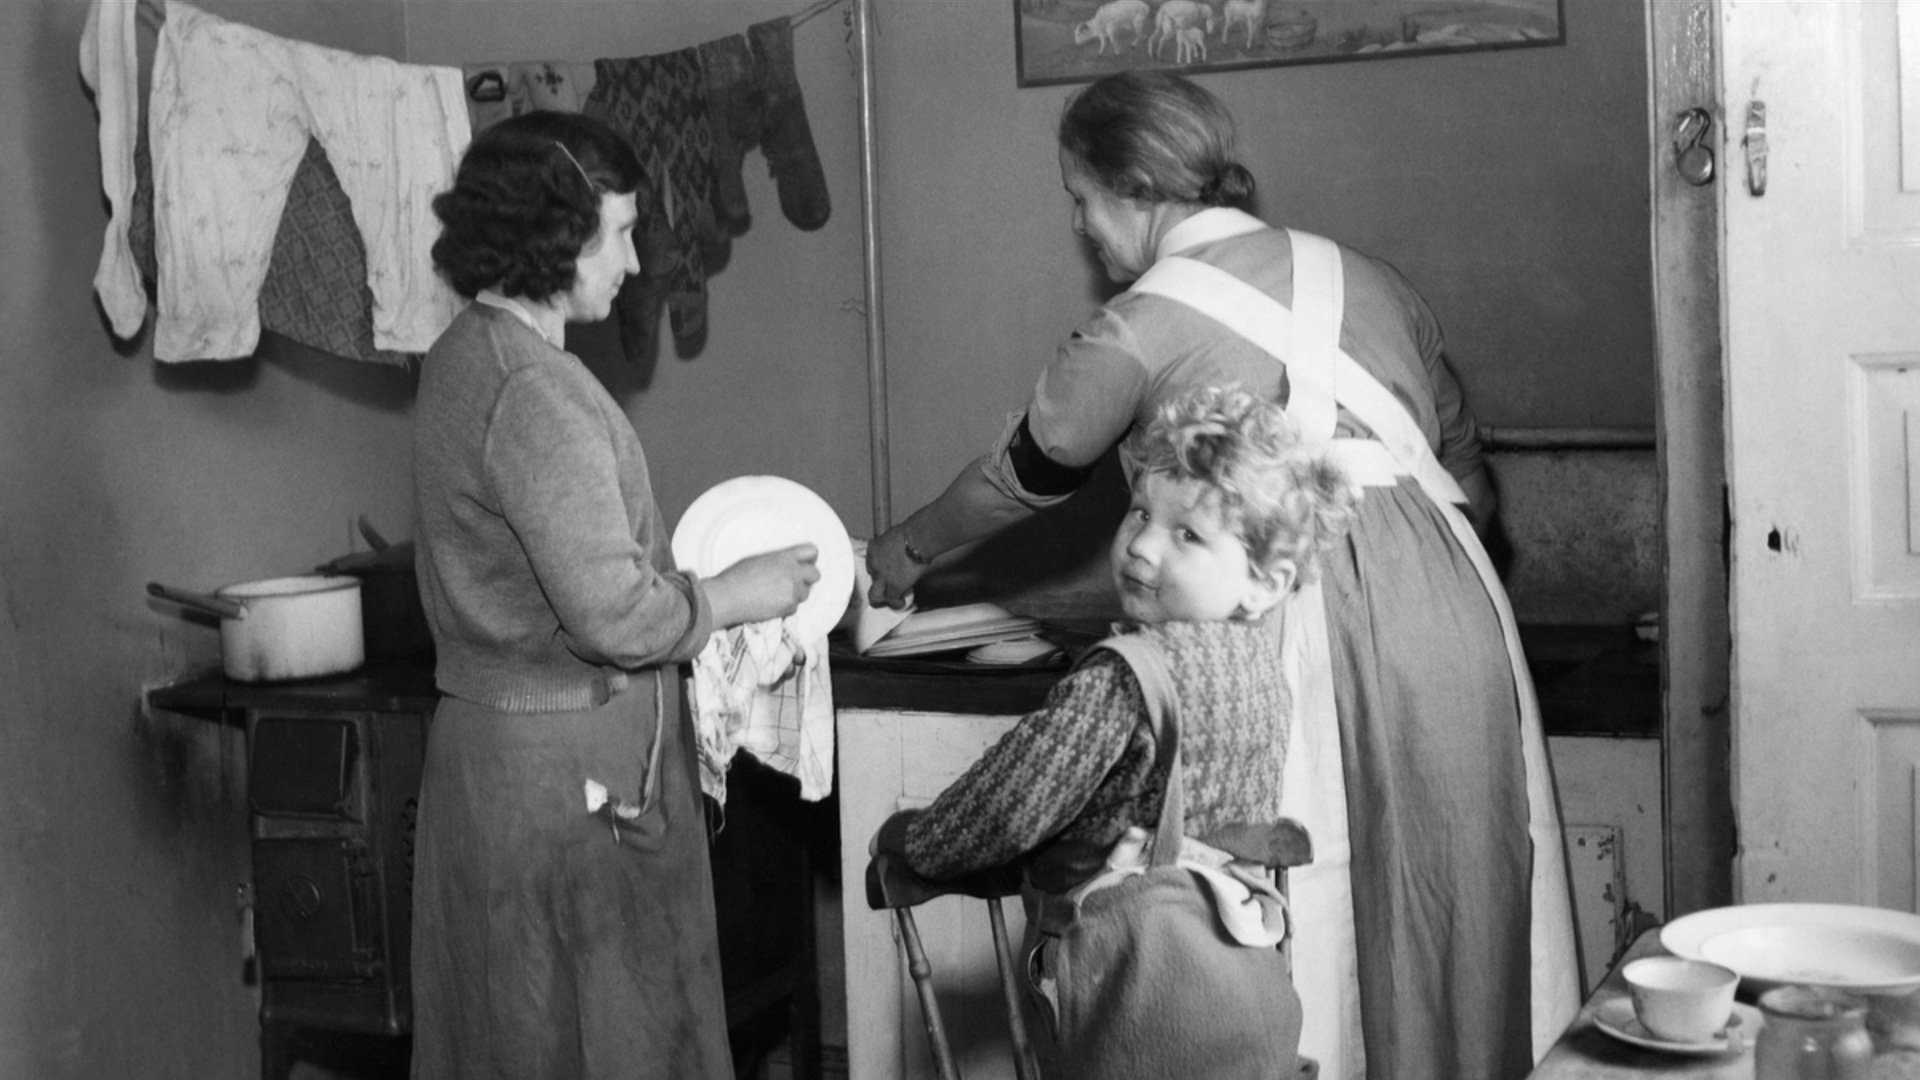 Svartvitt fotografi från 1950-talet. Två kvinnor torkar disk i ett fattigt hem med vedspis. I förgrunden syns en liten pojke som tittar mot kameran.